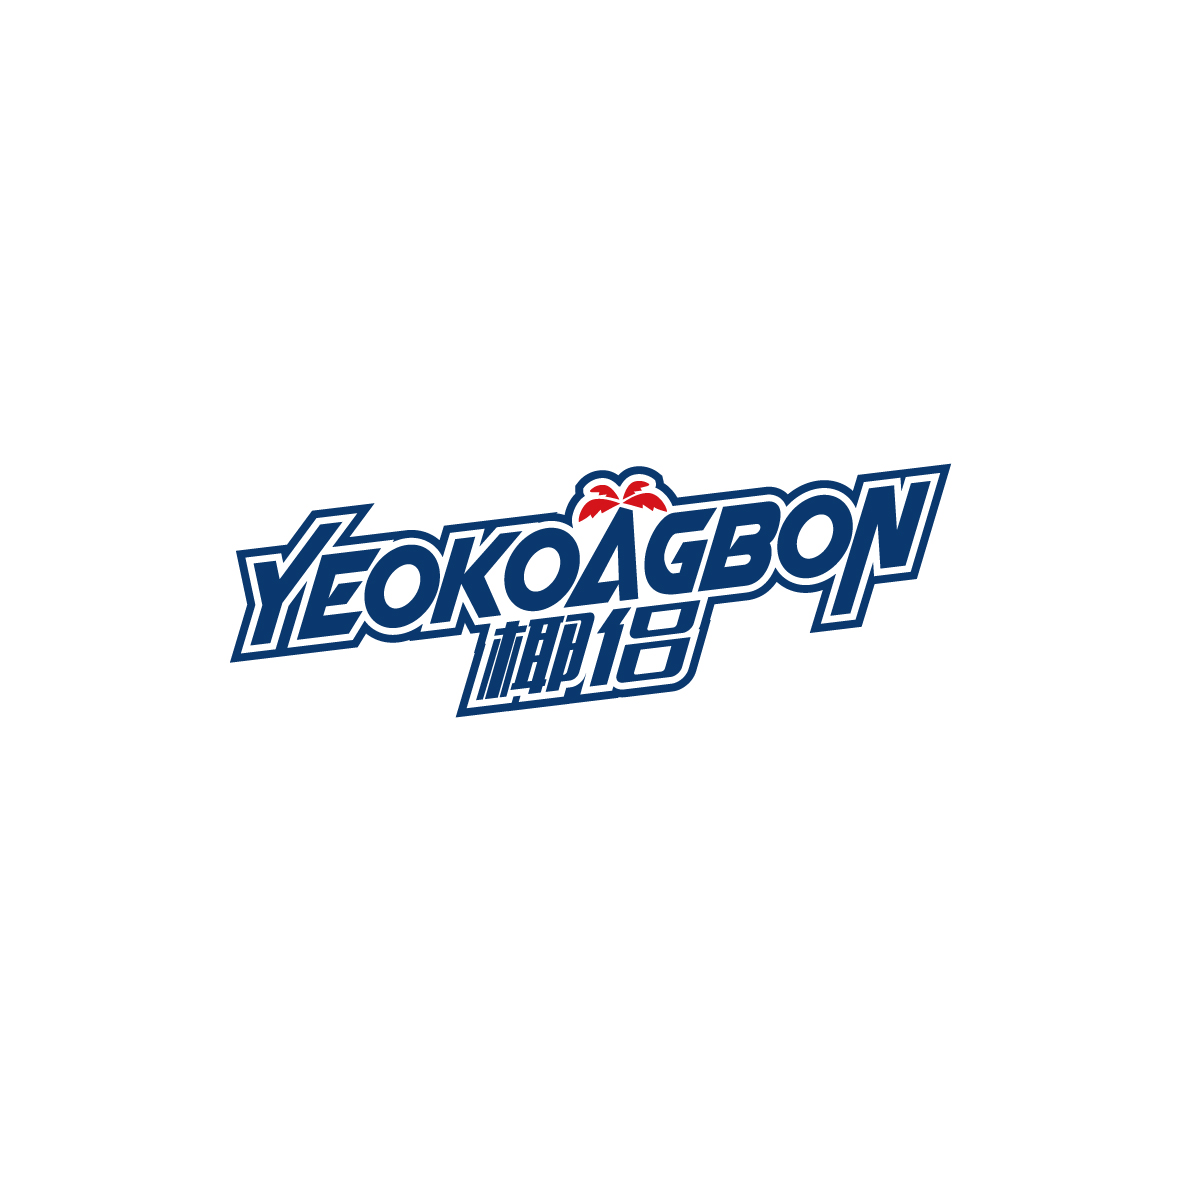 广州锦泰荣网络科技有限公司商标椰侣 YEOKOAGBON（35类）商标买卖平台报价，上哪个平台最省钱？